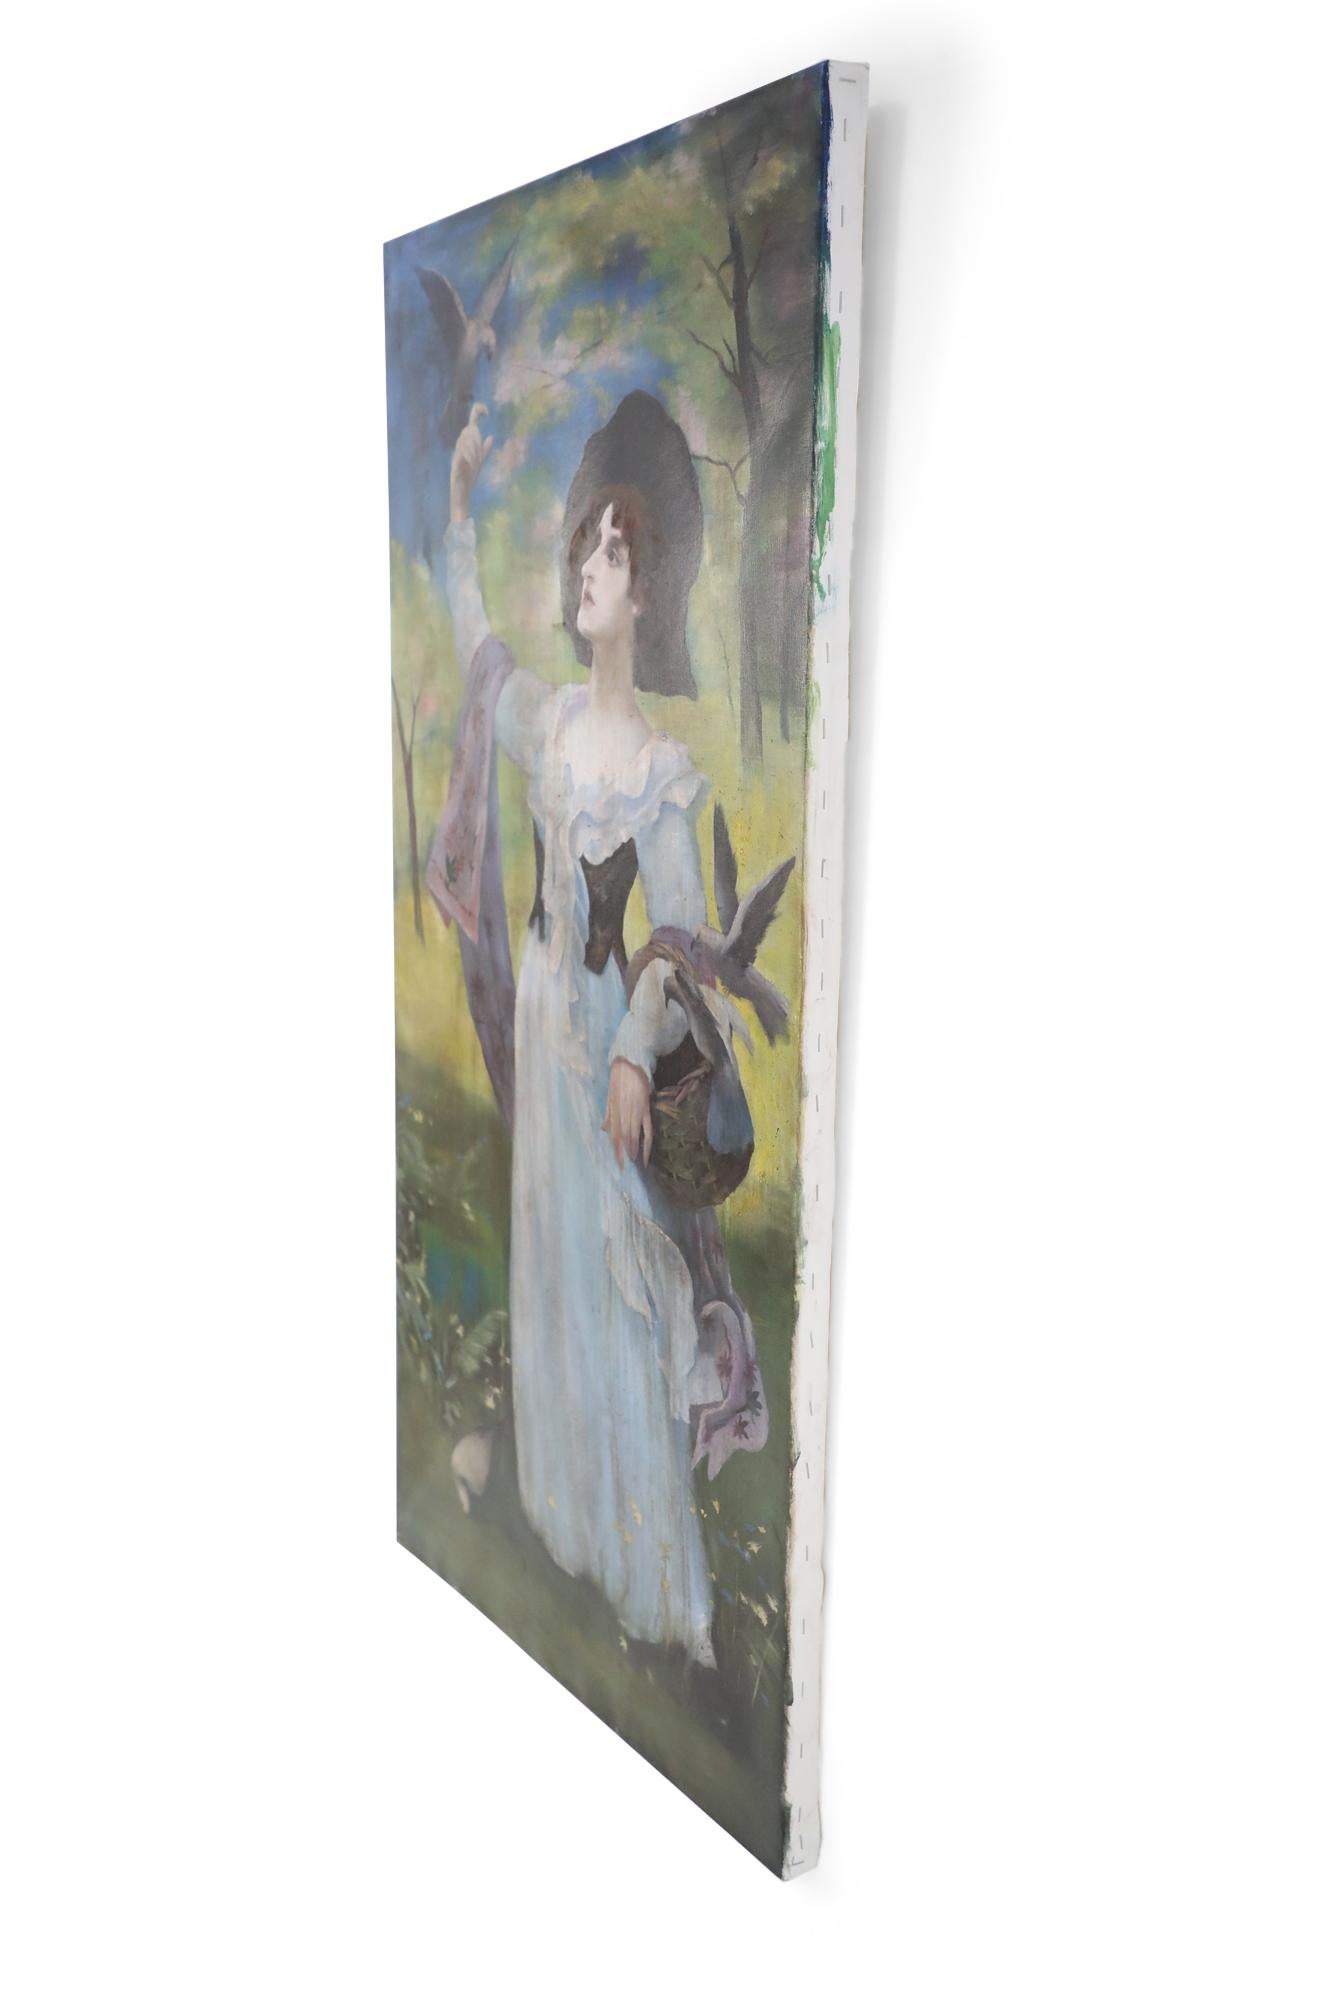 Ungerahmtes Vintage-Gemälde (20. Jahrhundert) einer Frau in weißem Kleid und lilafarbenem Schal in einer natürlichen Umgebung, mit einem Korb auf einem Arm und einem Vogel auf der gegenüberliegenden, erhobenen Hand, gemalt auf Leinwand.
 